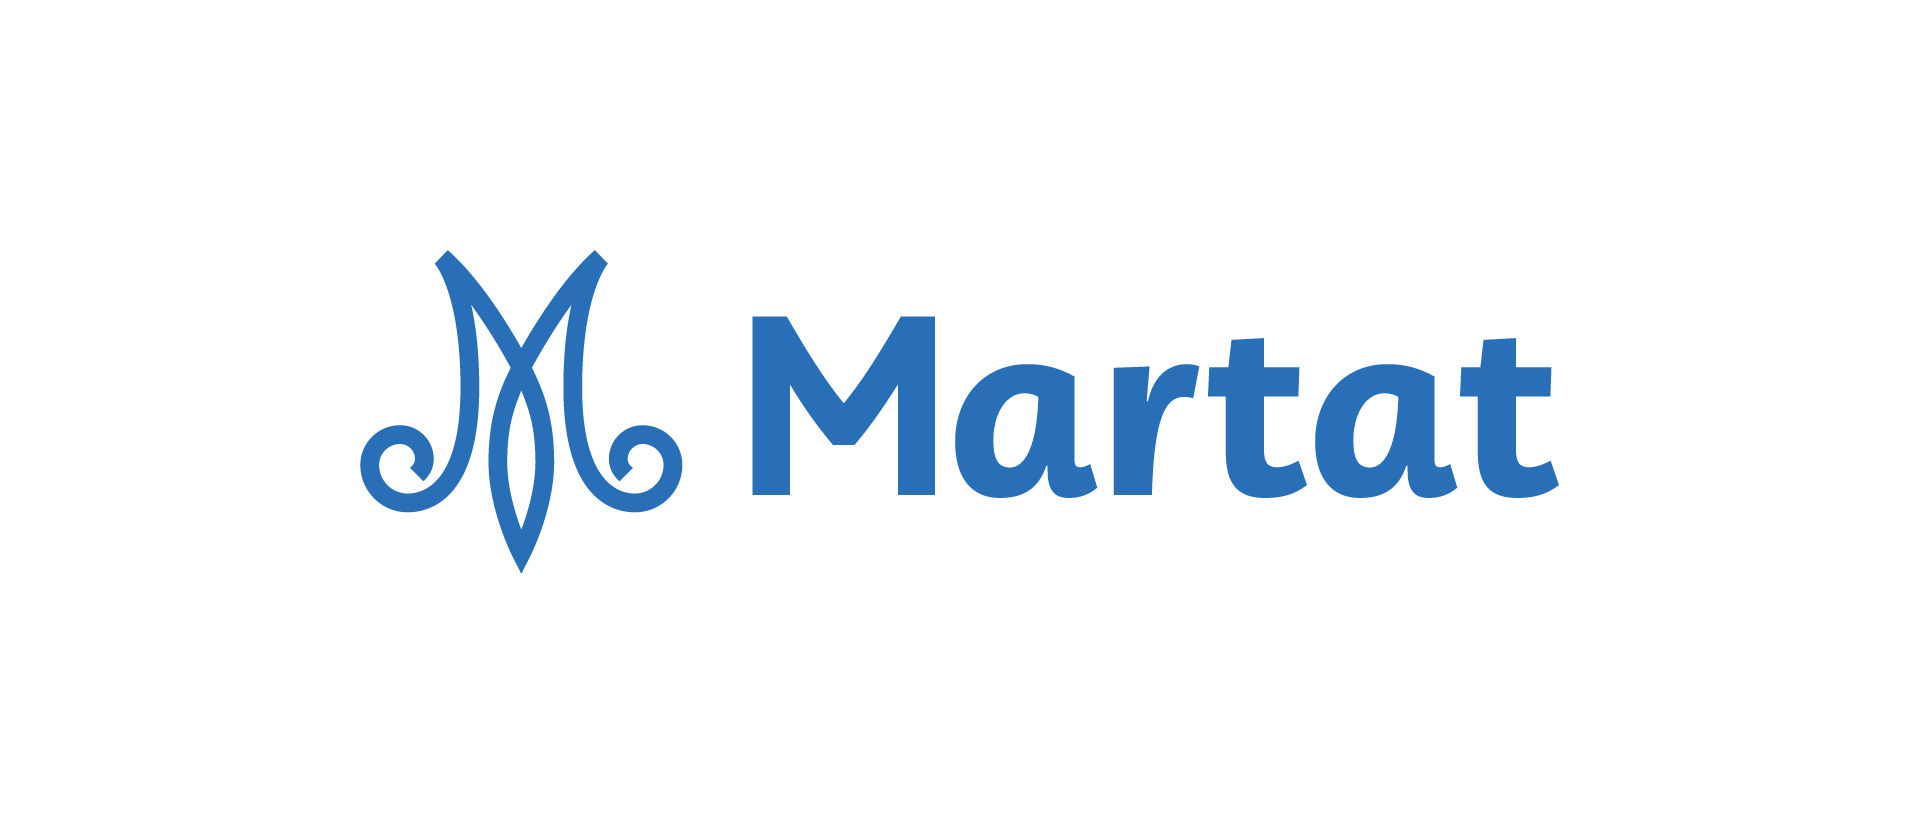 Marttaliiton logo